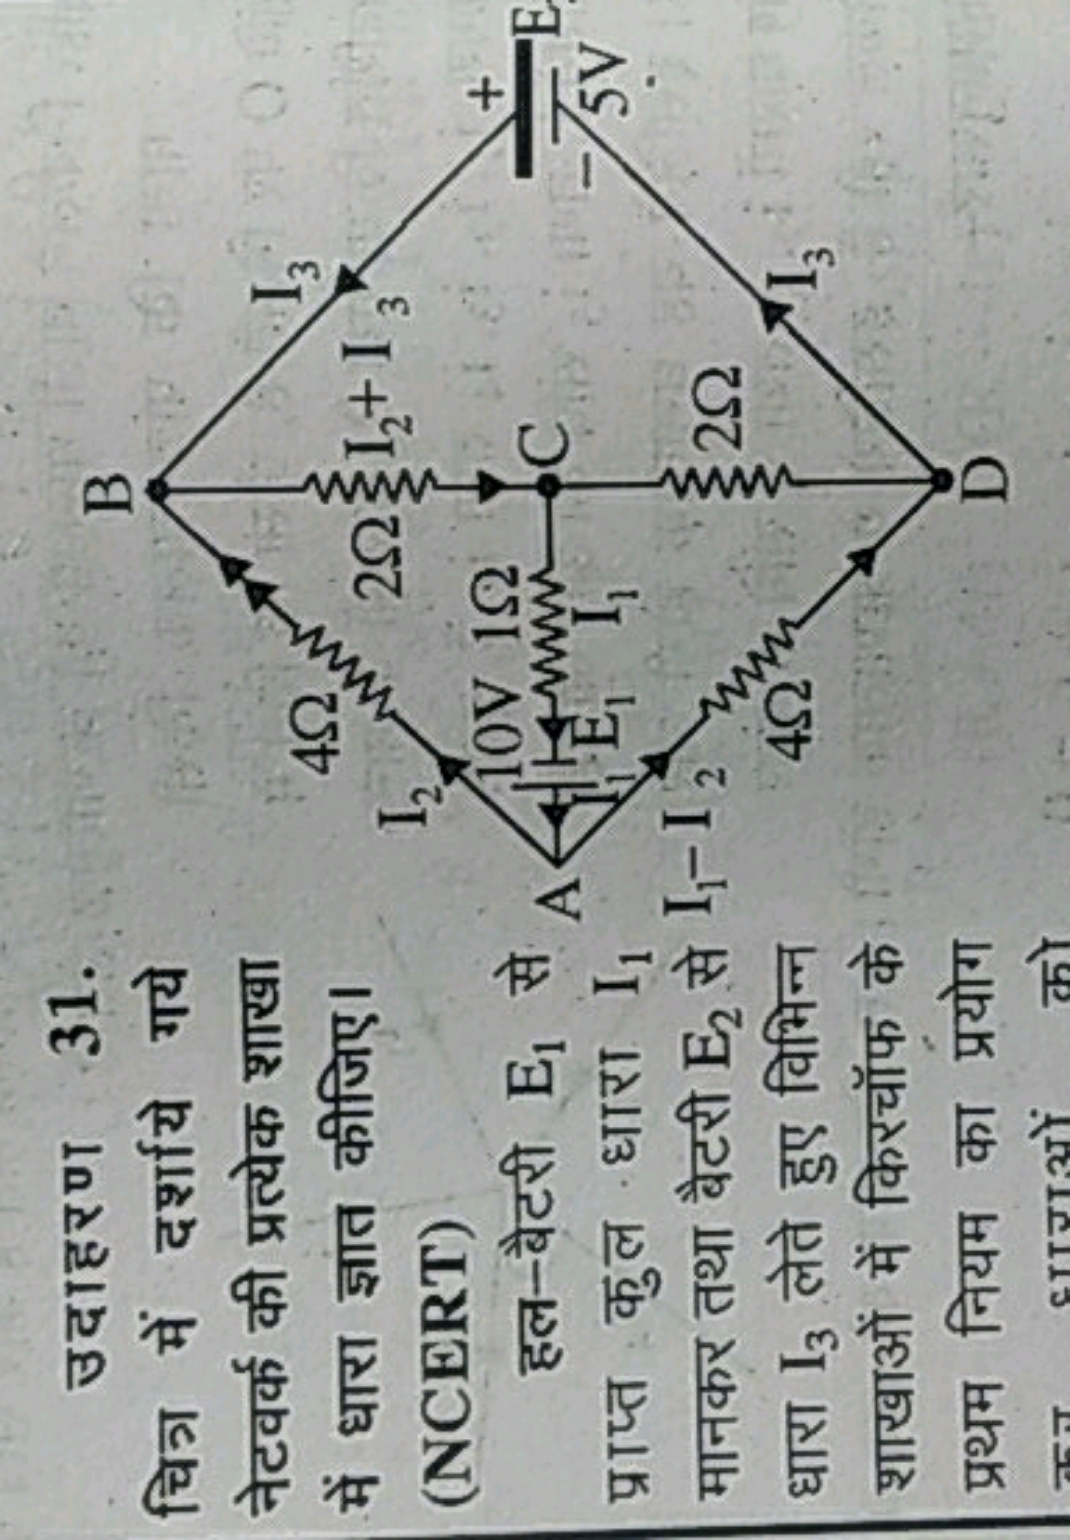 उदाहरण 31.
चित्र में दर्शाये गये नेटवर्क की प्रत्येक शाखा में धारा ज्ञ